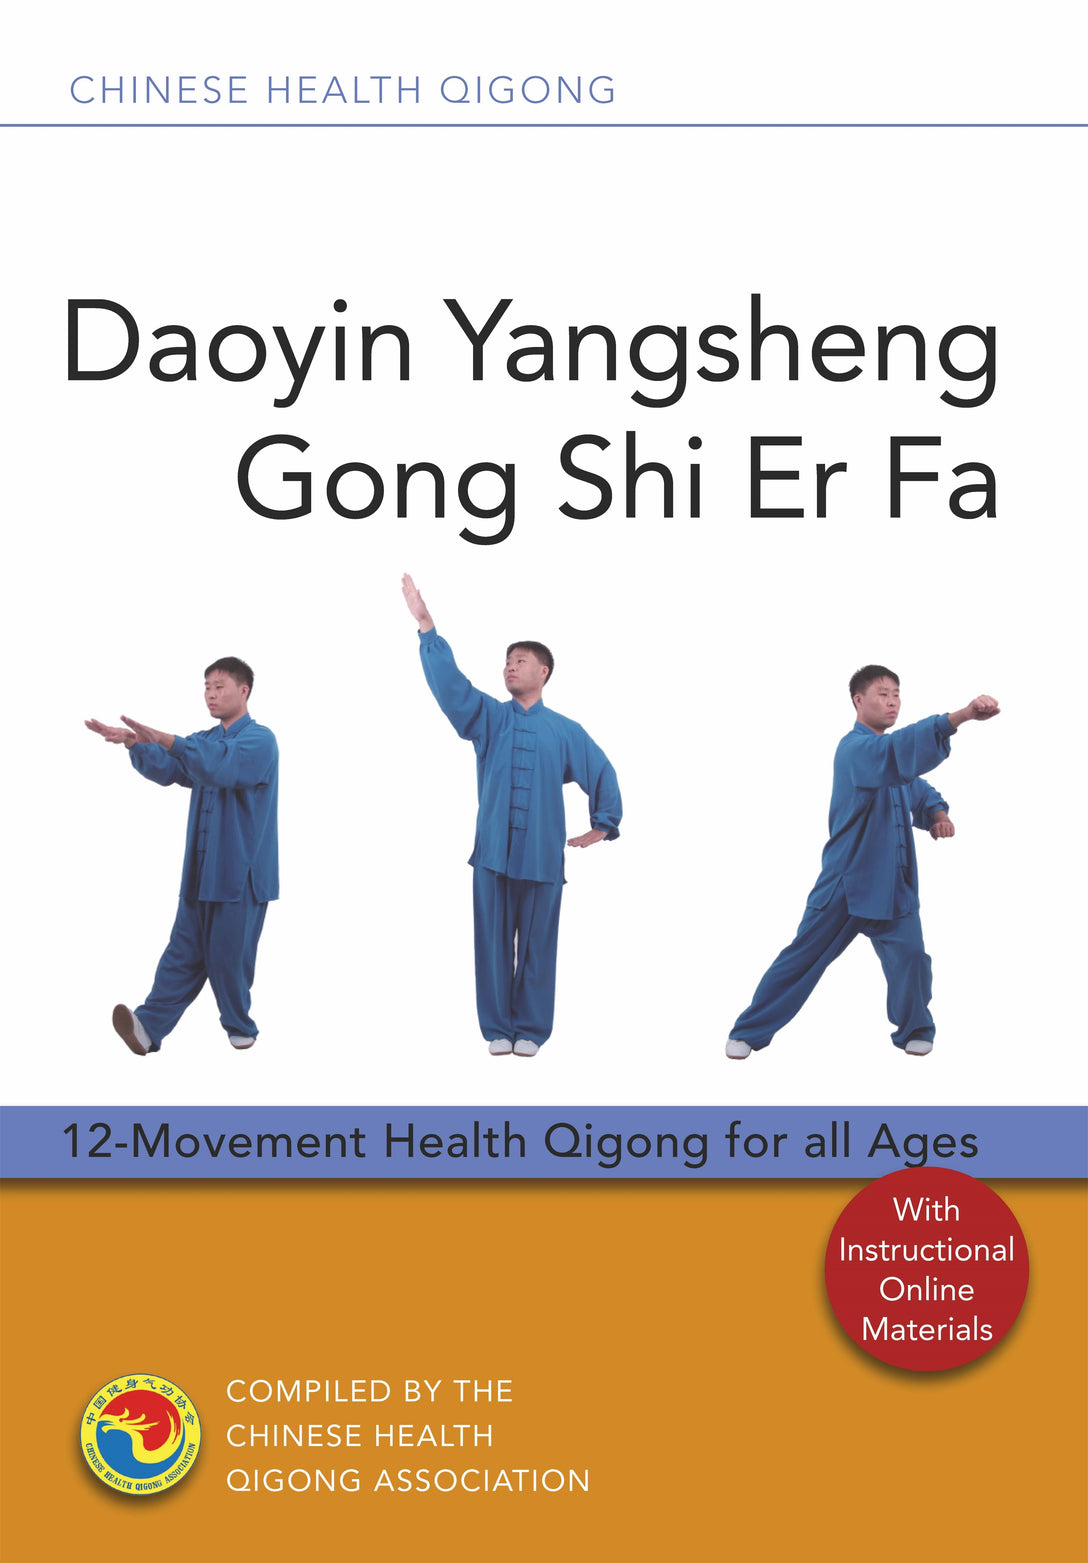 Daoyin Yangsheng Gong Shi Er Fa by Chinese Health Qigong Association